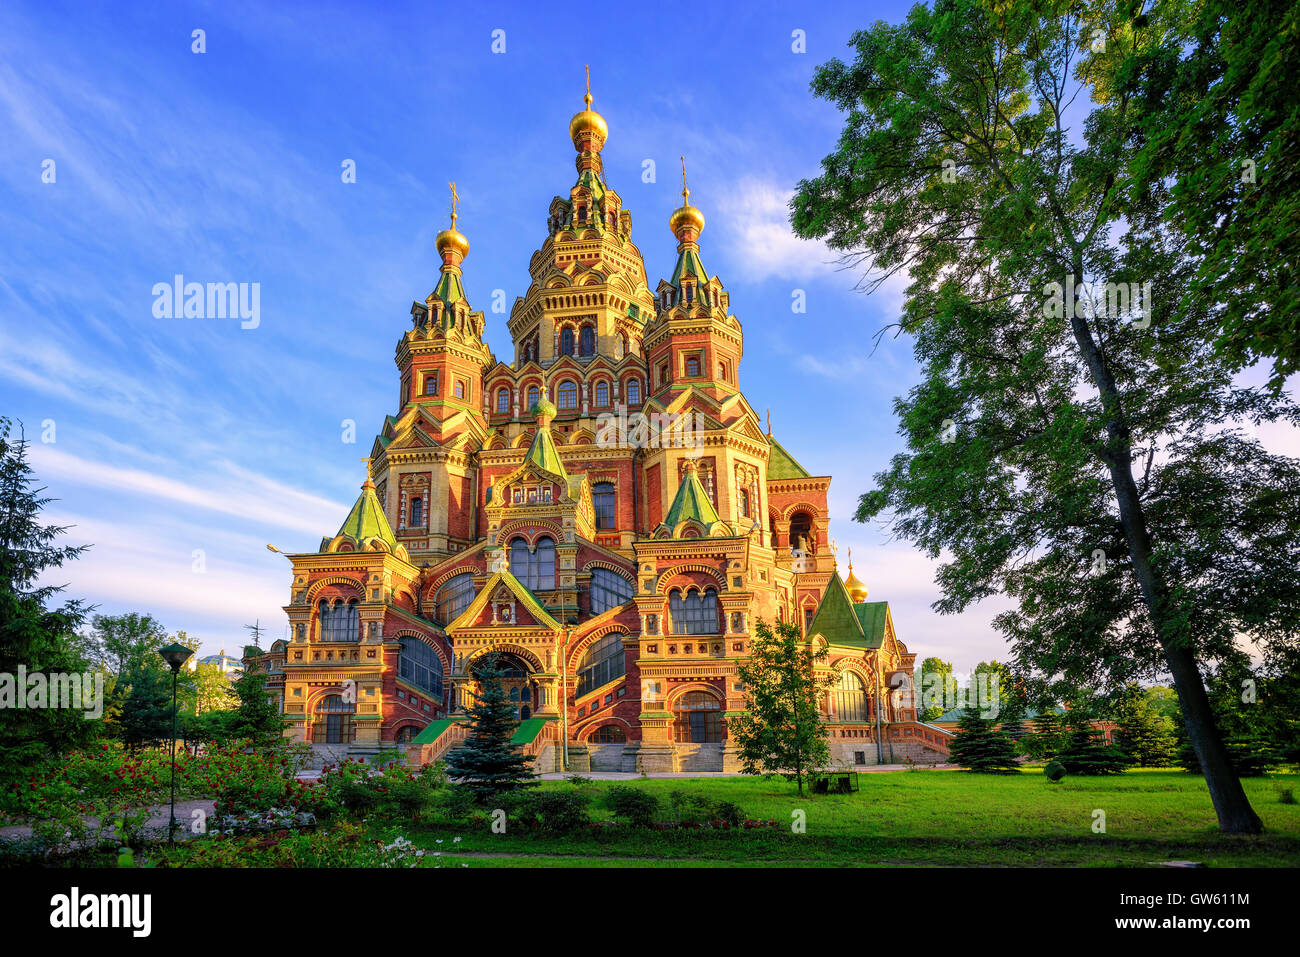 St Pierre et Paul cathédrale est une église orthodoxe russe traditionnel, Peterhof, Saint-Pétersbourg, Russie Banque D'Images